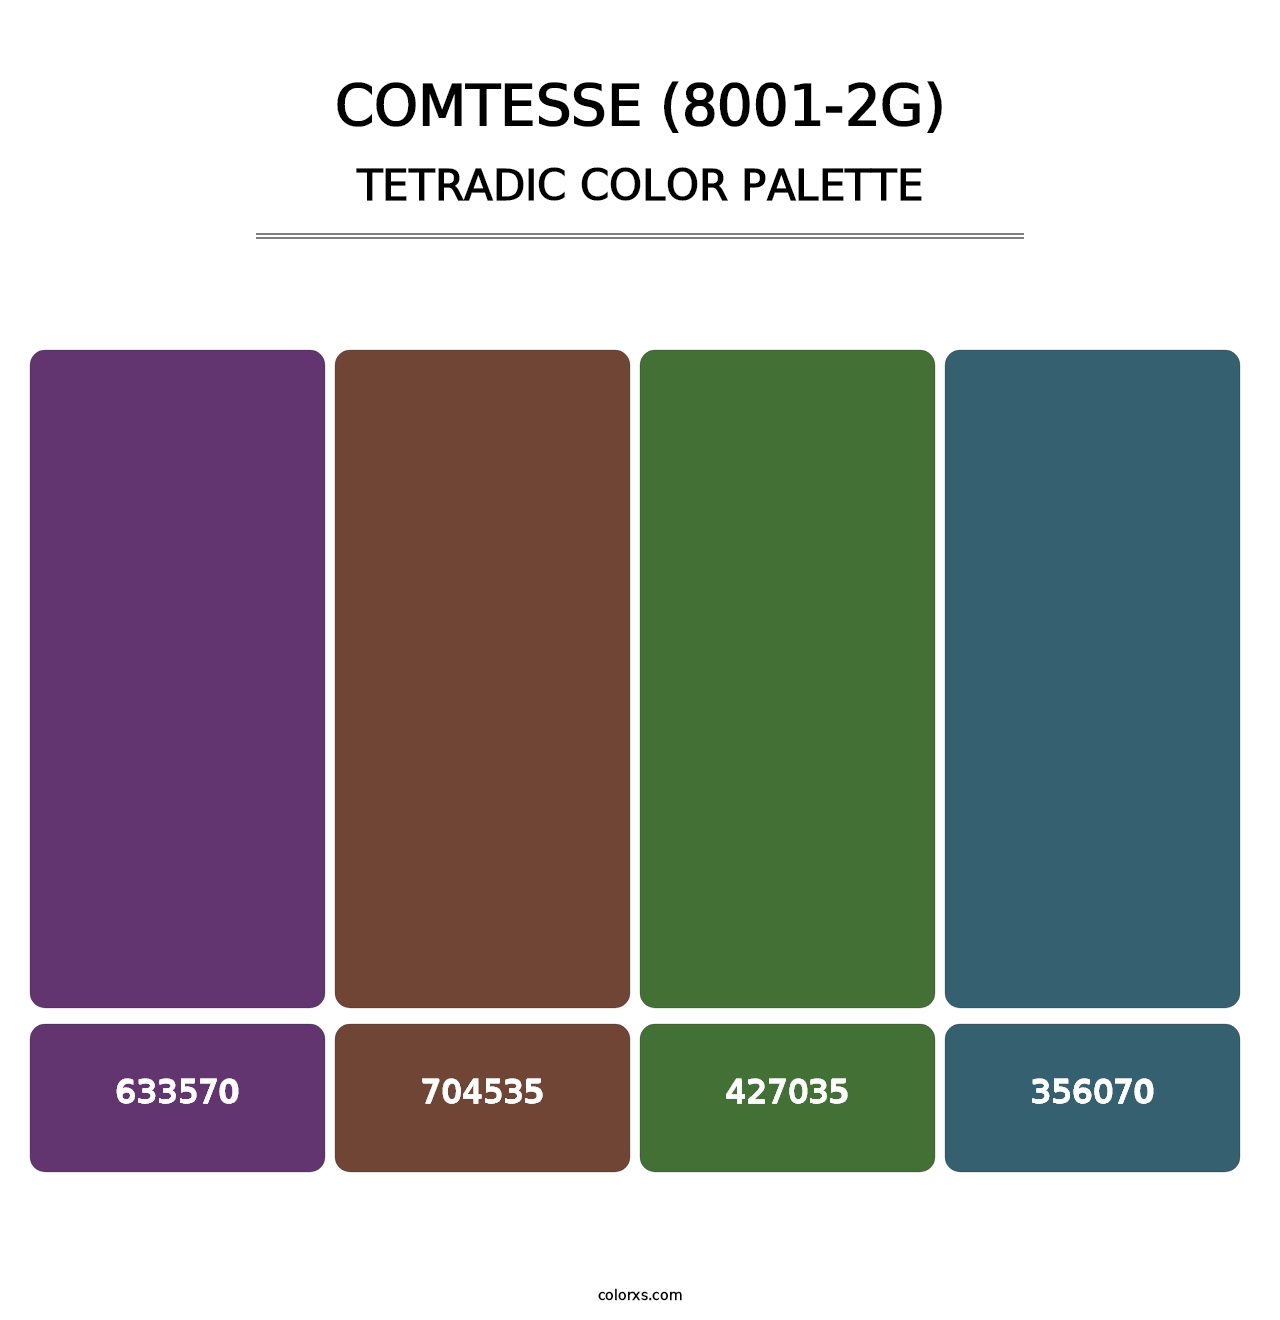 Comtesse (8001-2G) - Tetradic Color Palette